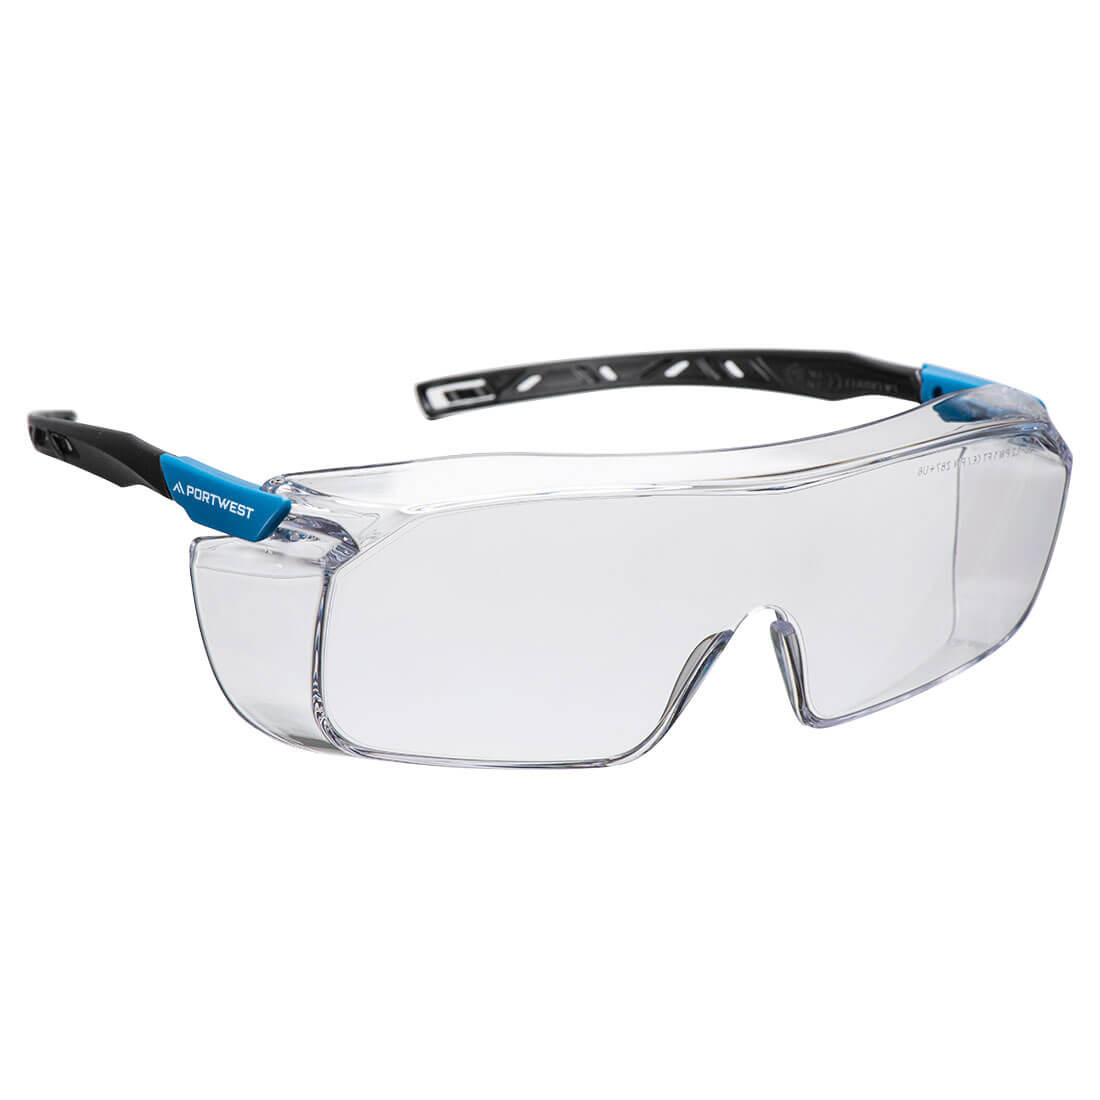 Top OTG-Schutzbrille - Arbeitschutz